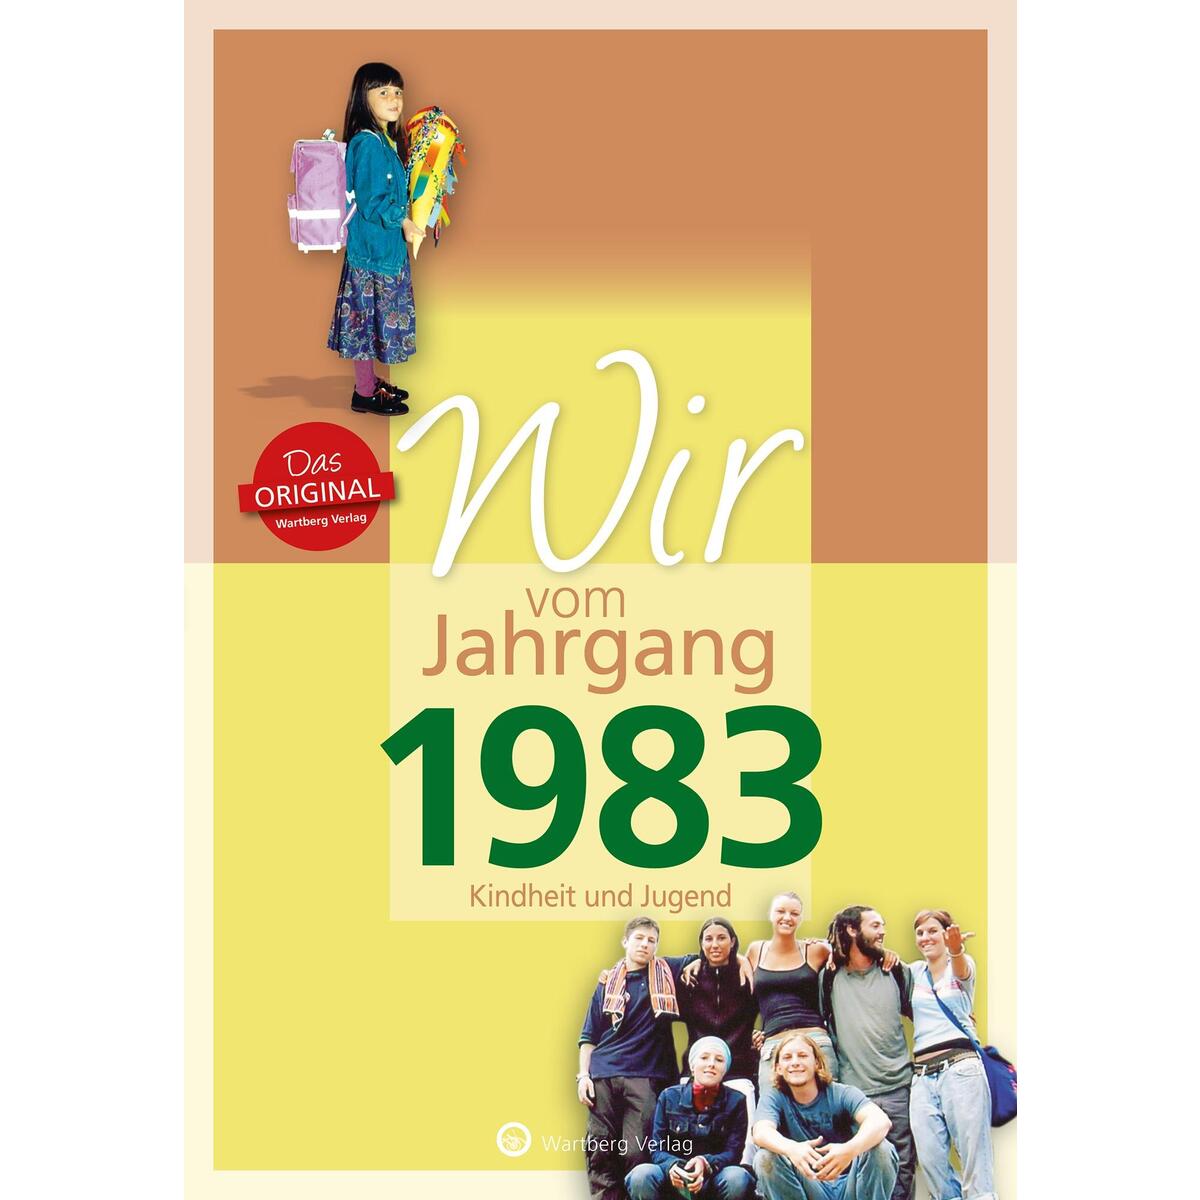 Wir vom Jahrgang 1983 - Kindheit und Jugend von Wartberg Verlag